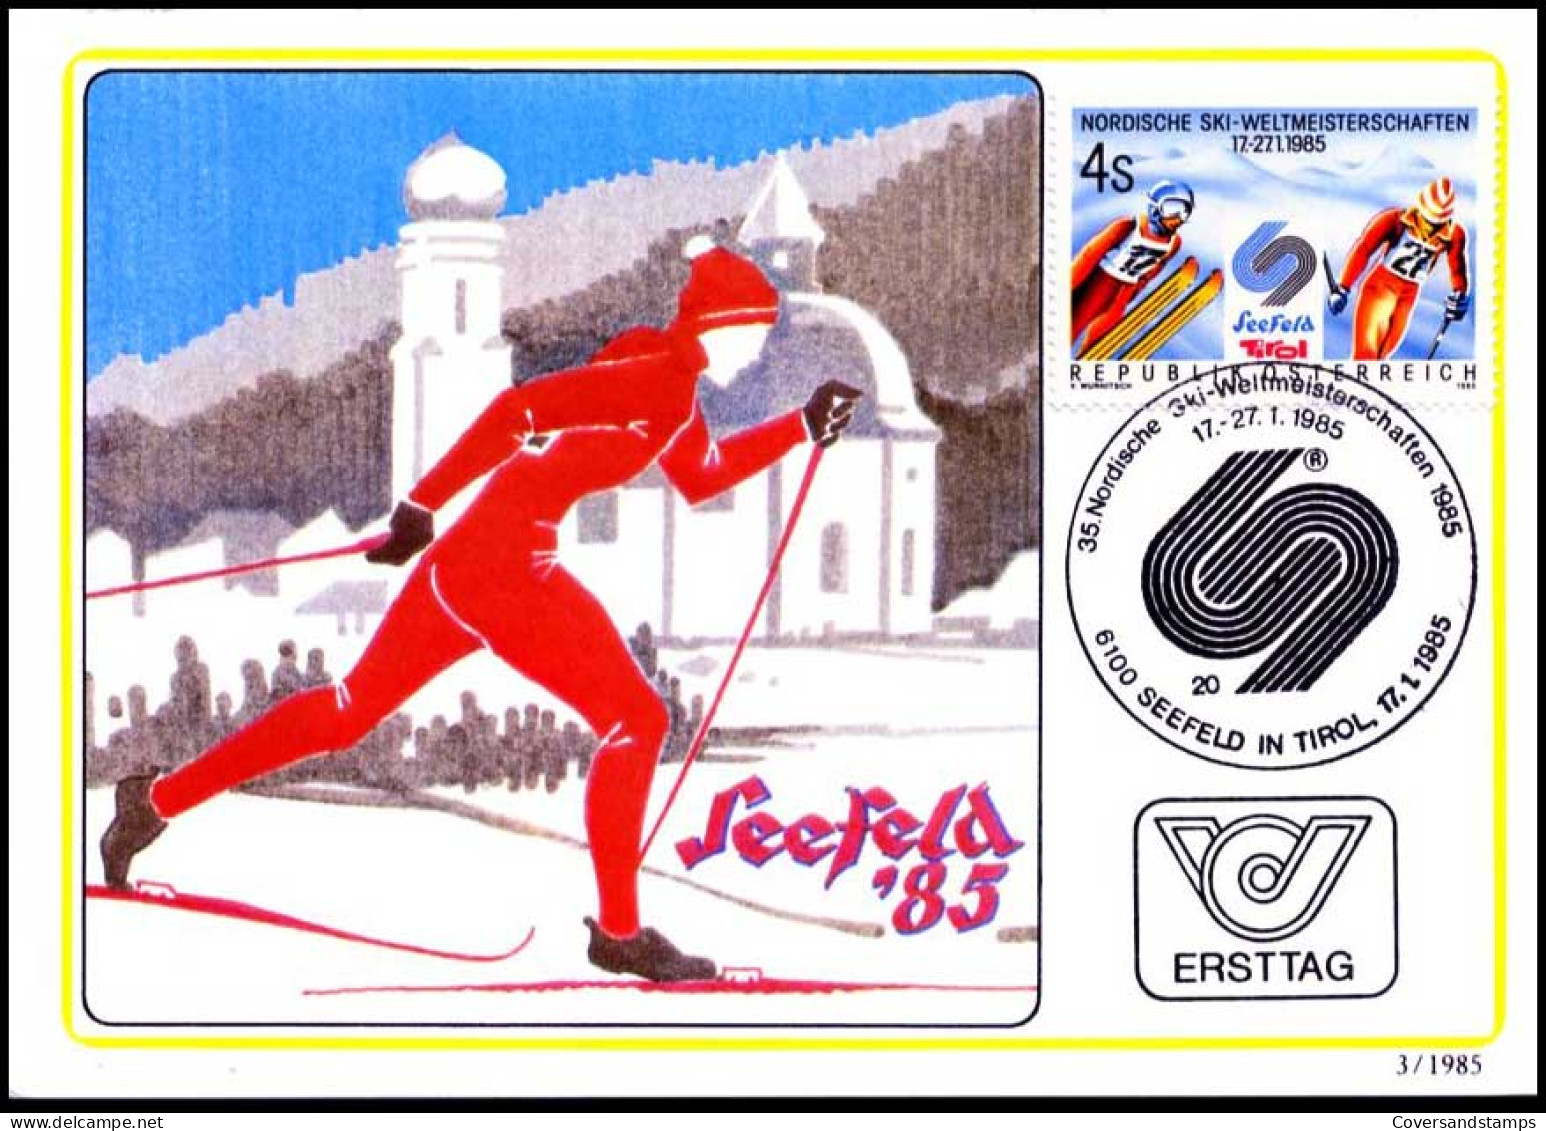 Oostenrijk - MK - Nordische Ski-weltmeisterschaften                                           - Maximumkarten (MC)